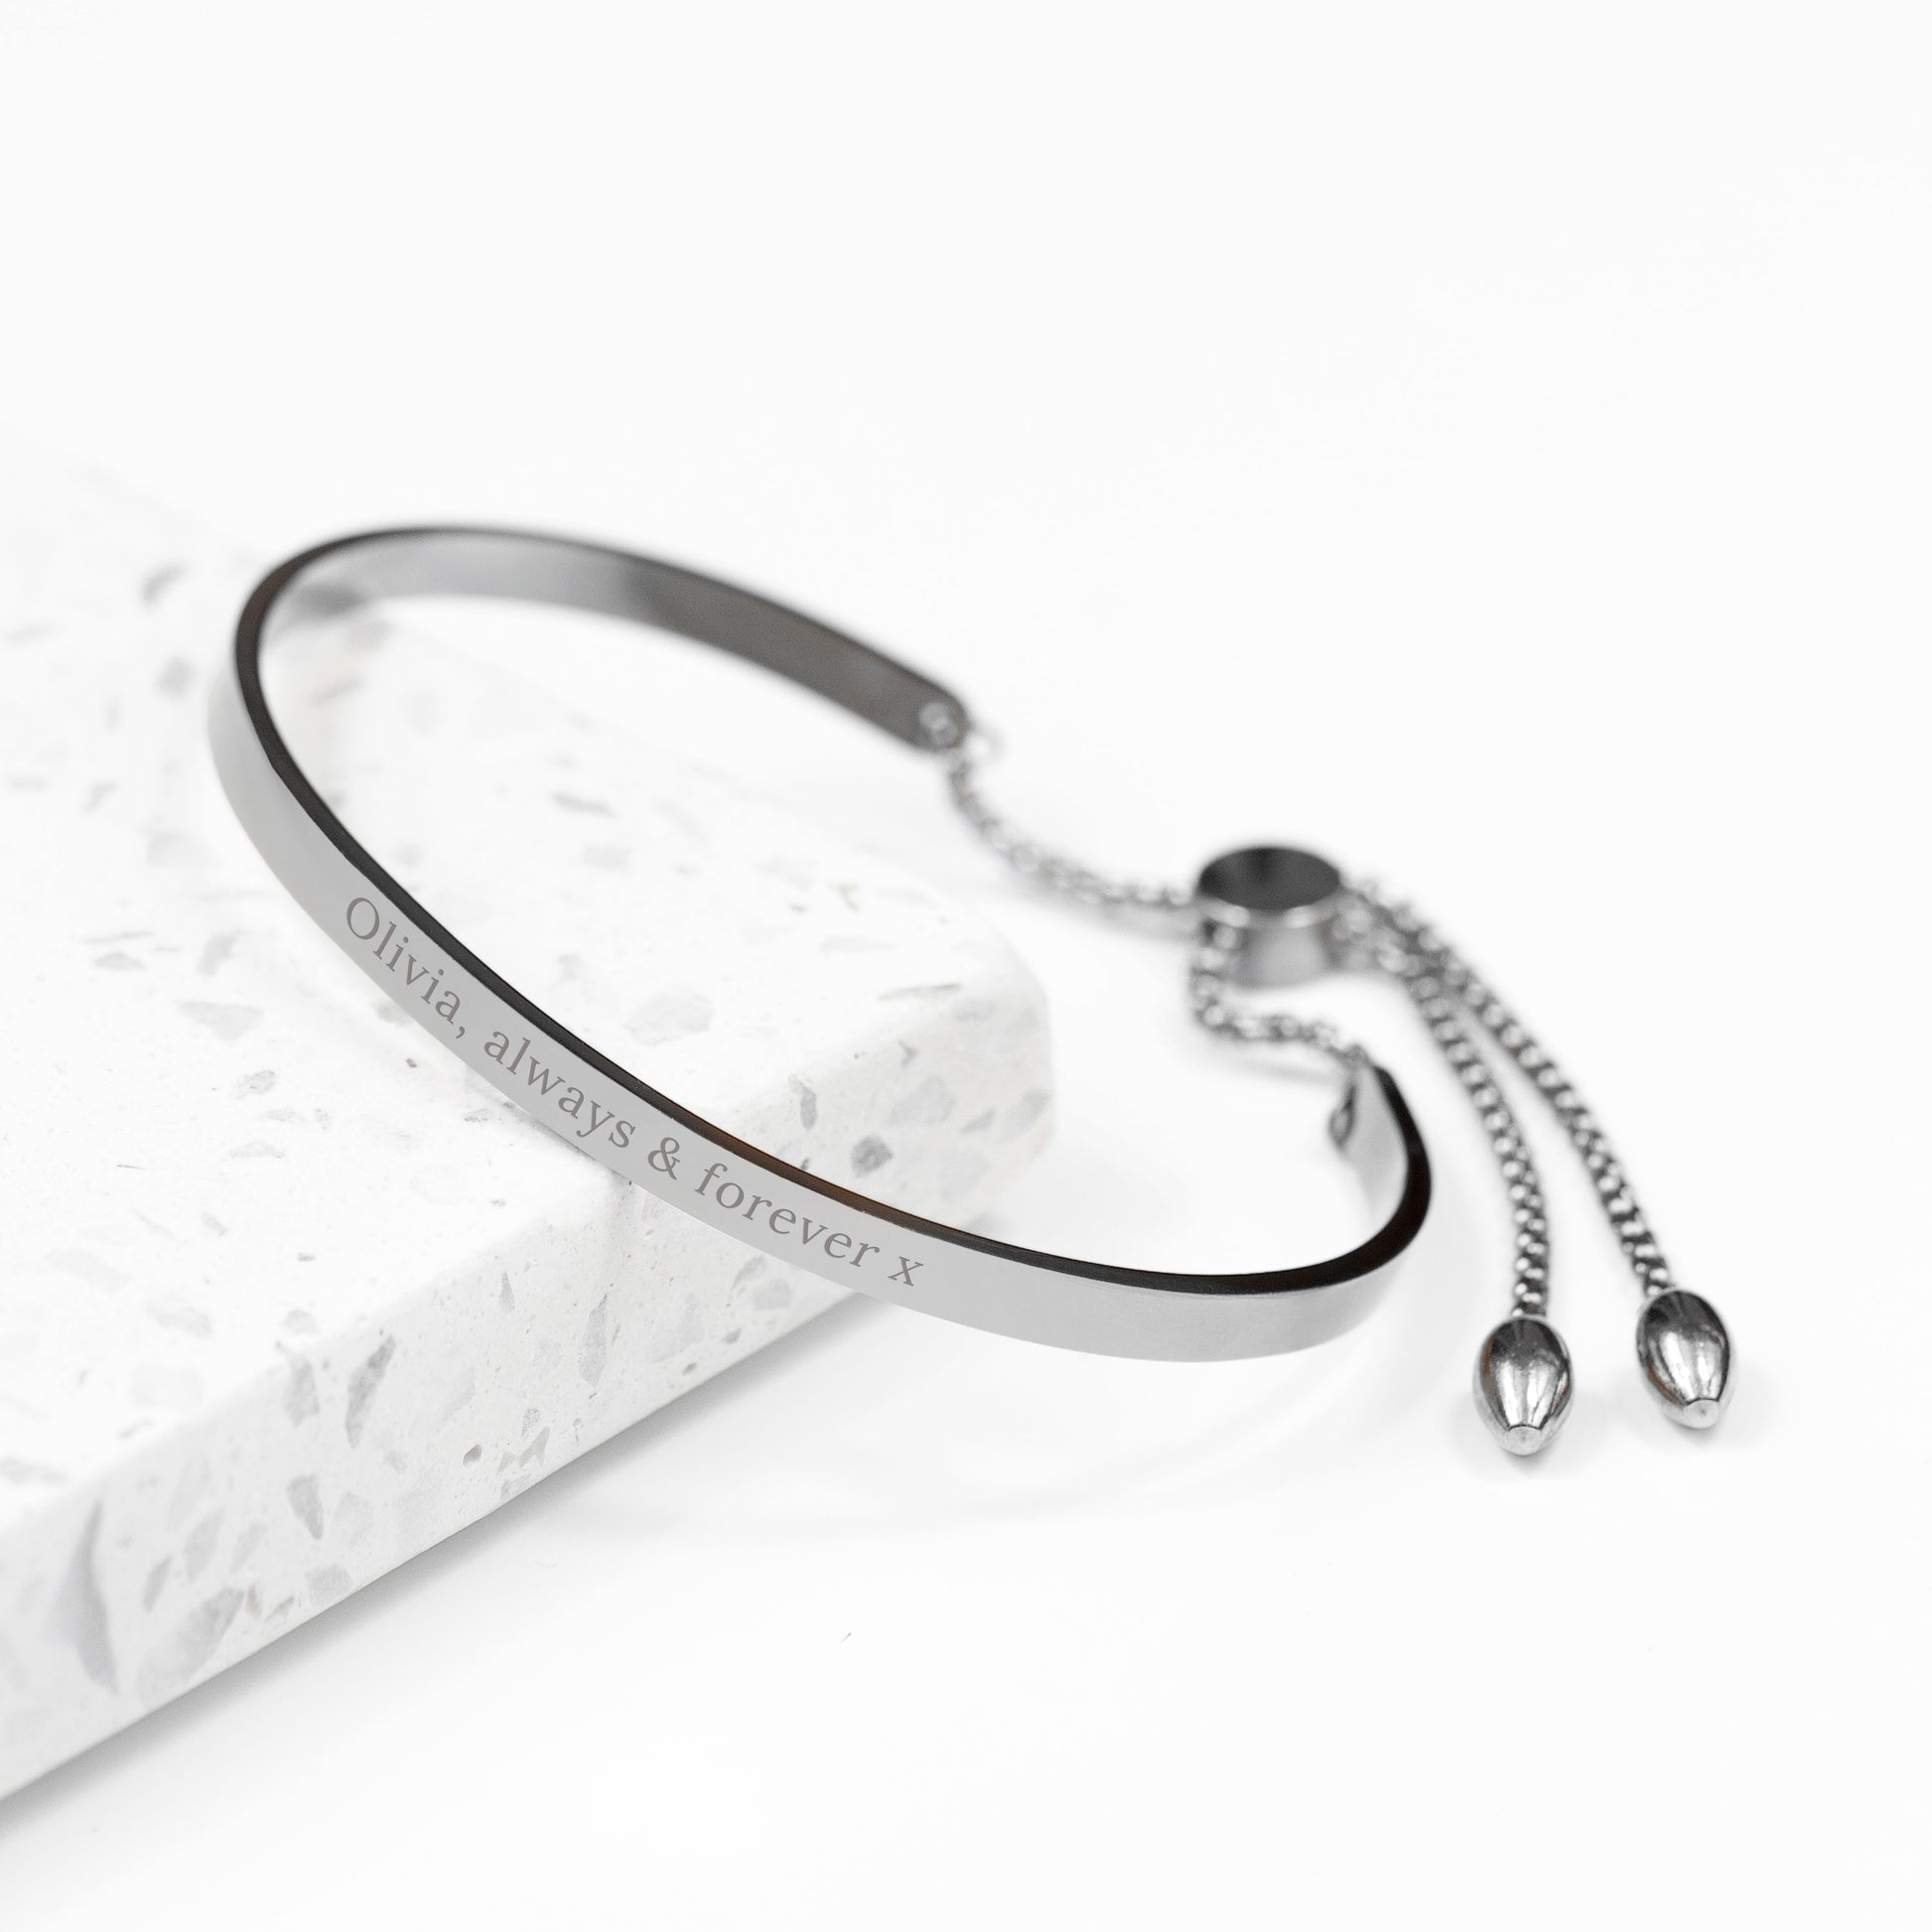 Personalized Bracelets - Personalized Silver Affirmation Bangle Bracelet 